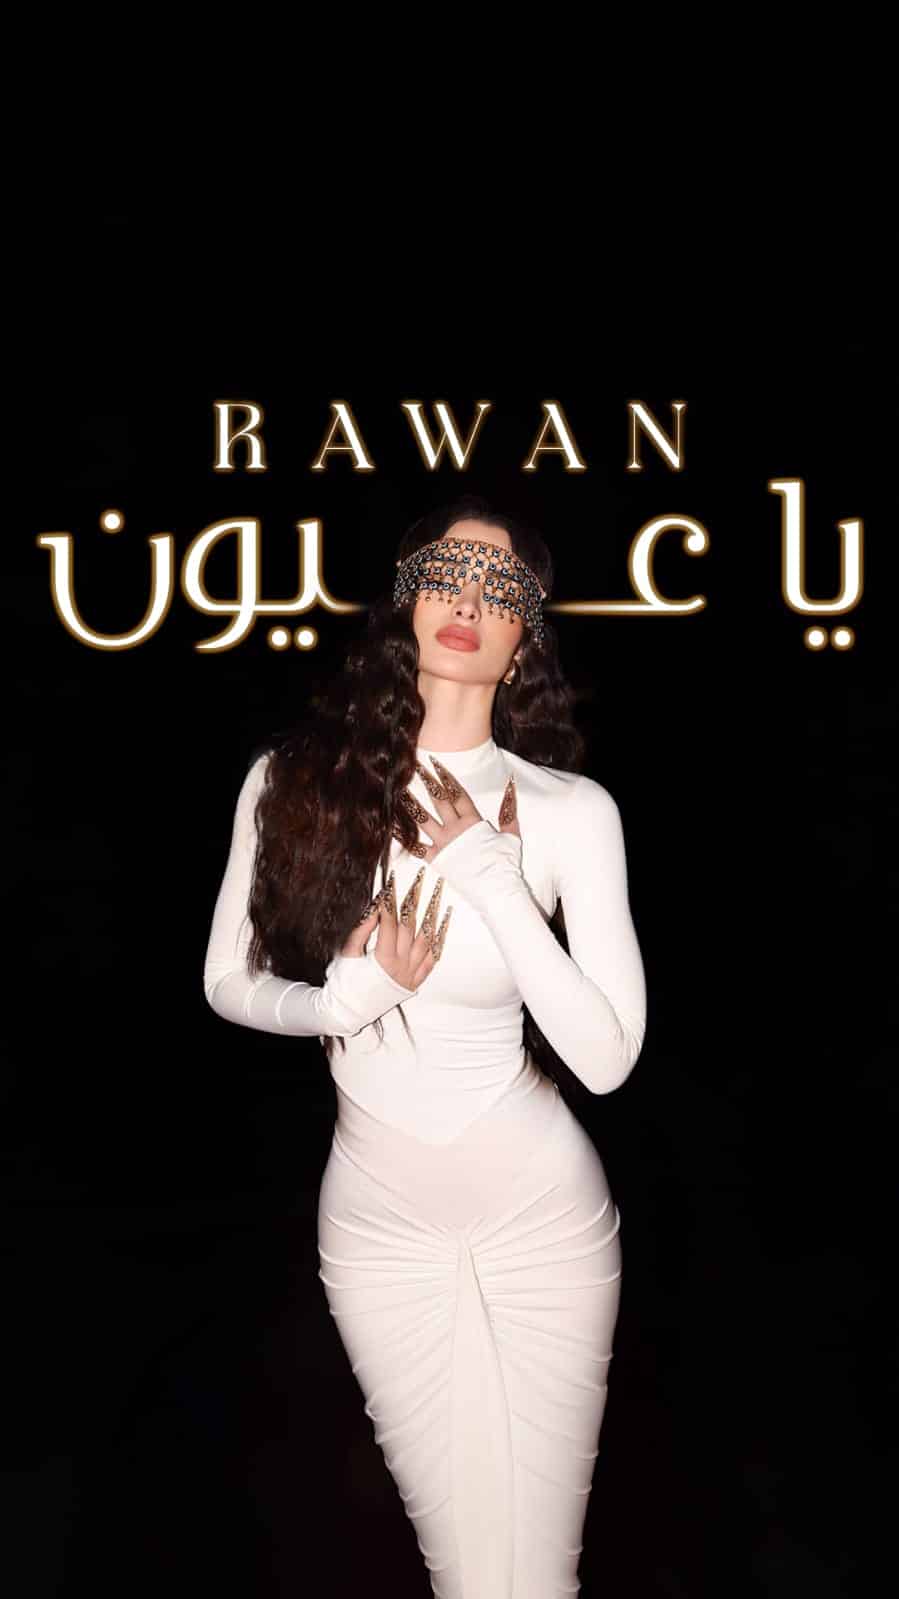 روان بن حسين تخطف الأضواء على خشبة مسرح مهرجان إيمي جالا في دبي وتطلق أغنيتها الجديدة “ياعيون”